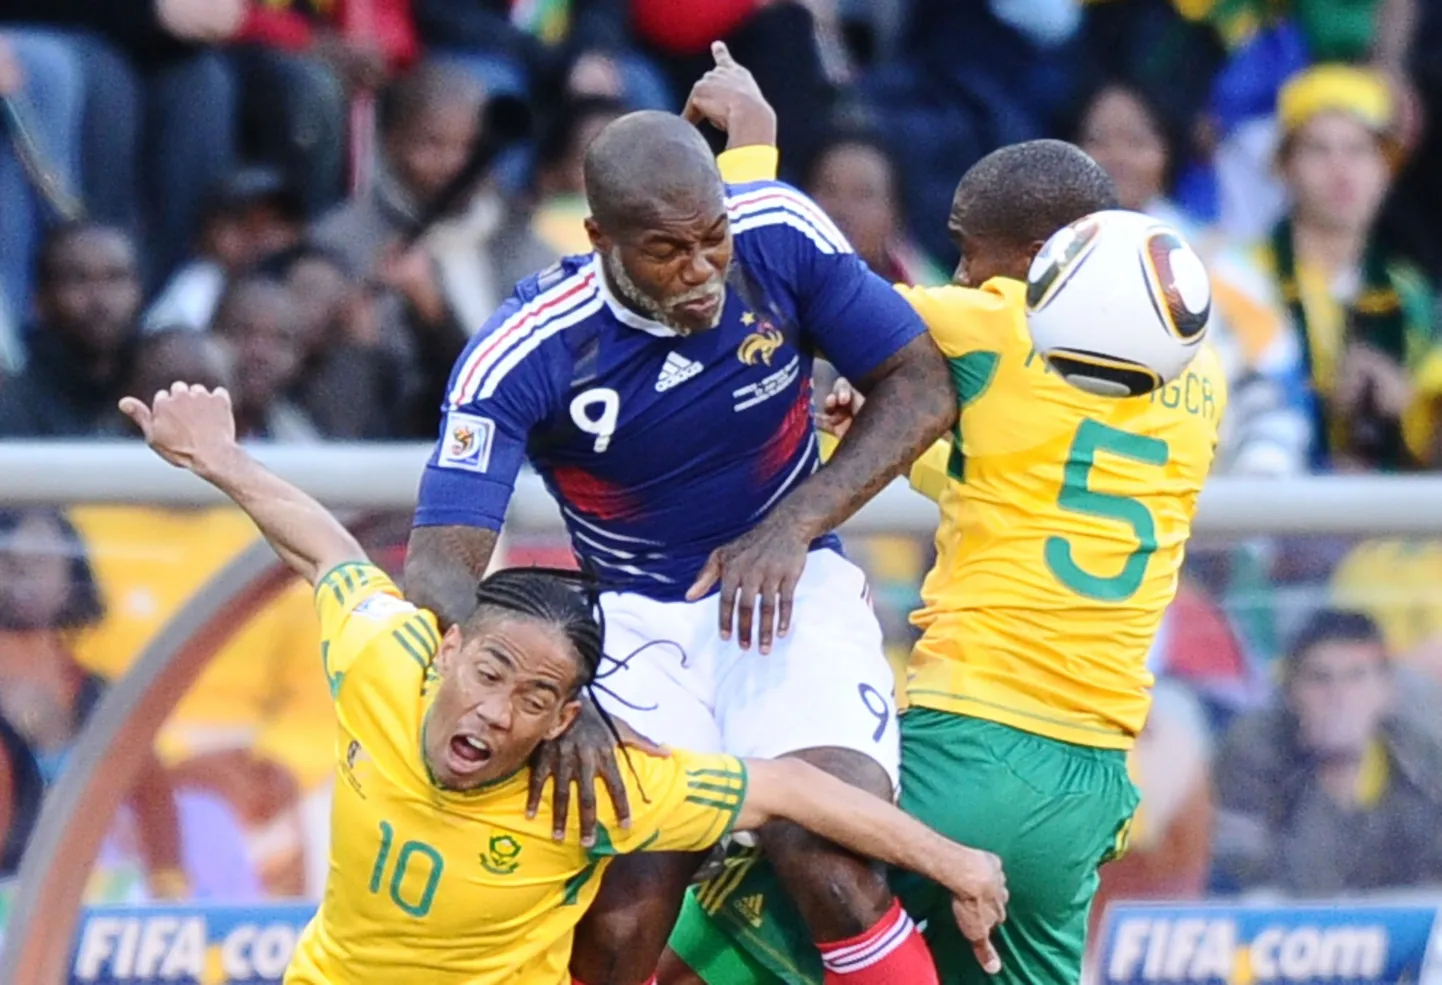 Снимок с ЧМ по футболу 2010 года в ЮАР.